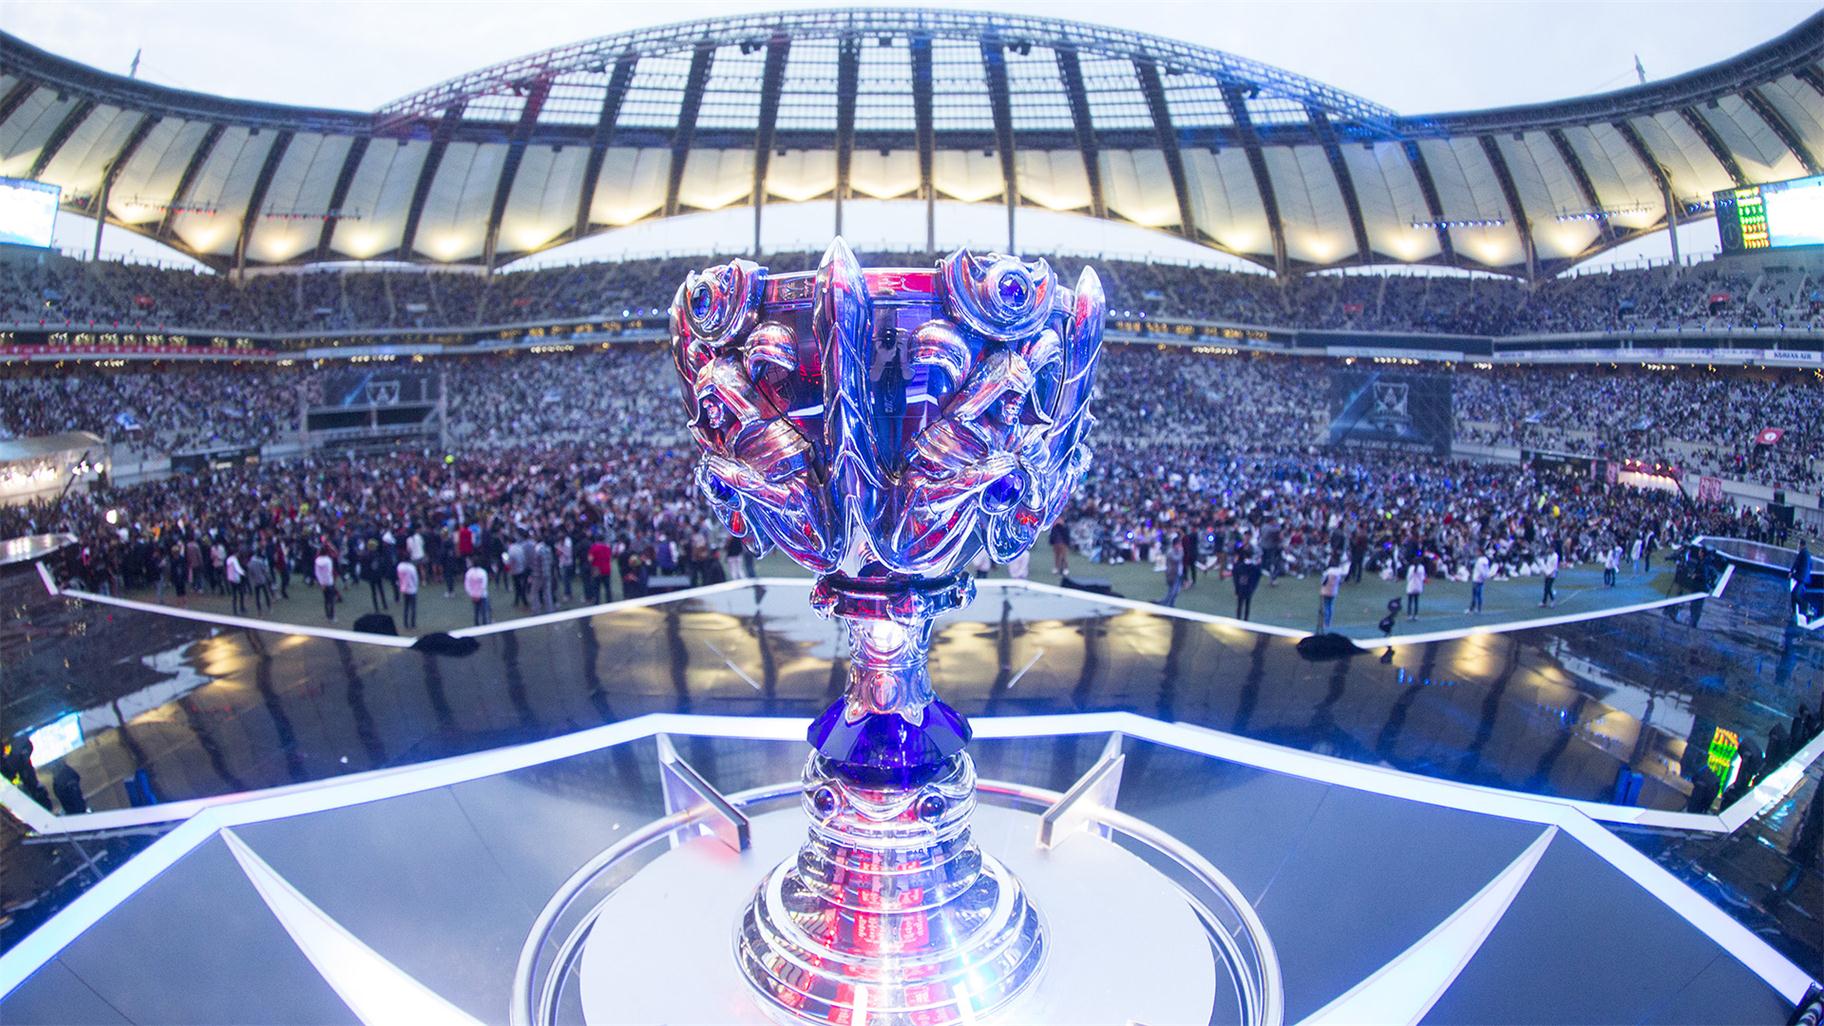 《英雄联盟》2015全球总决赛将在欧洲举办 - 火象网